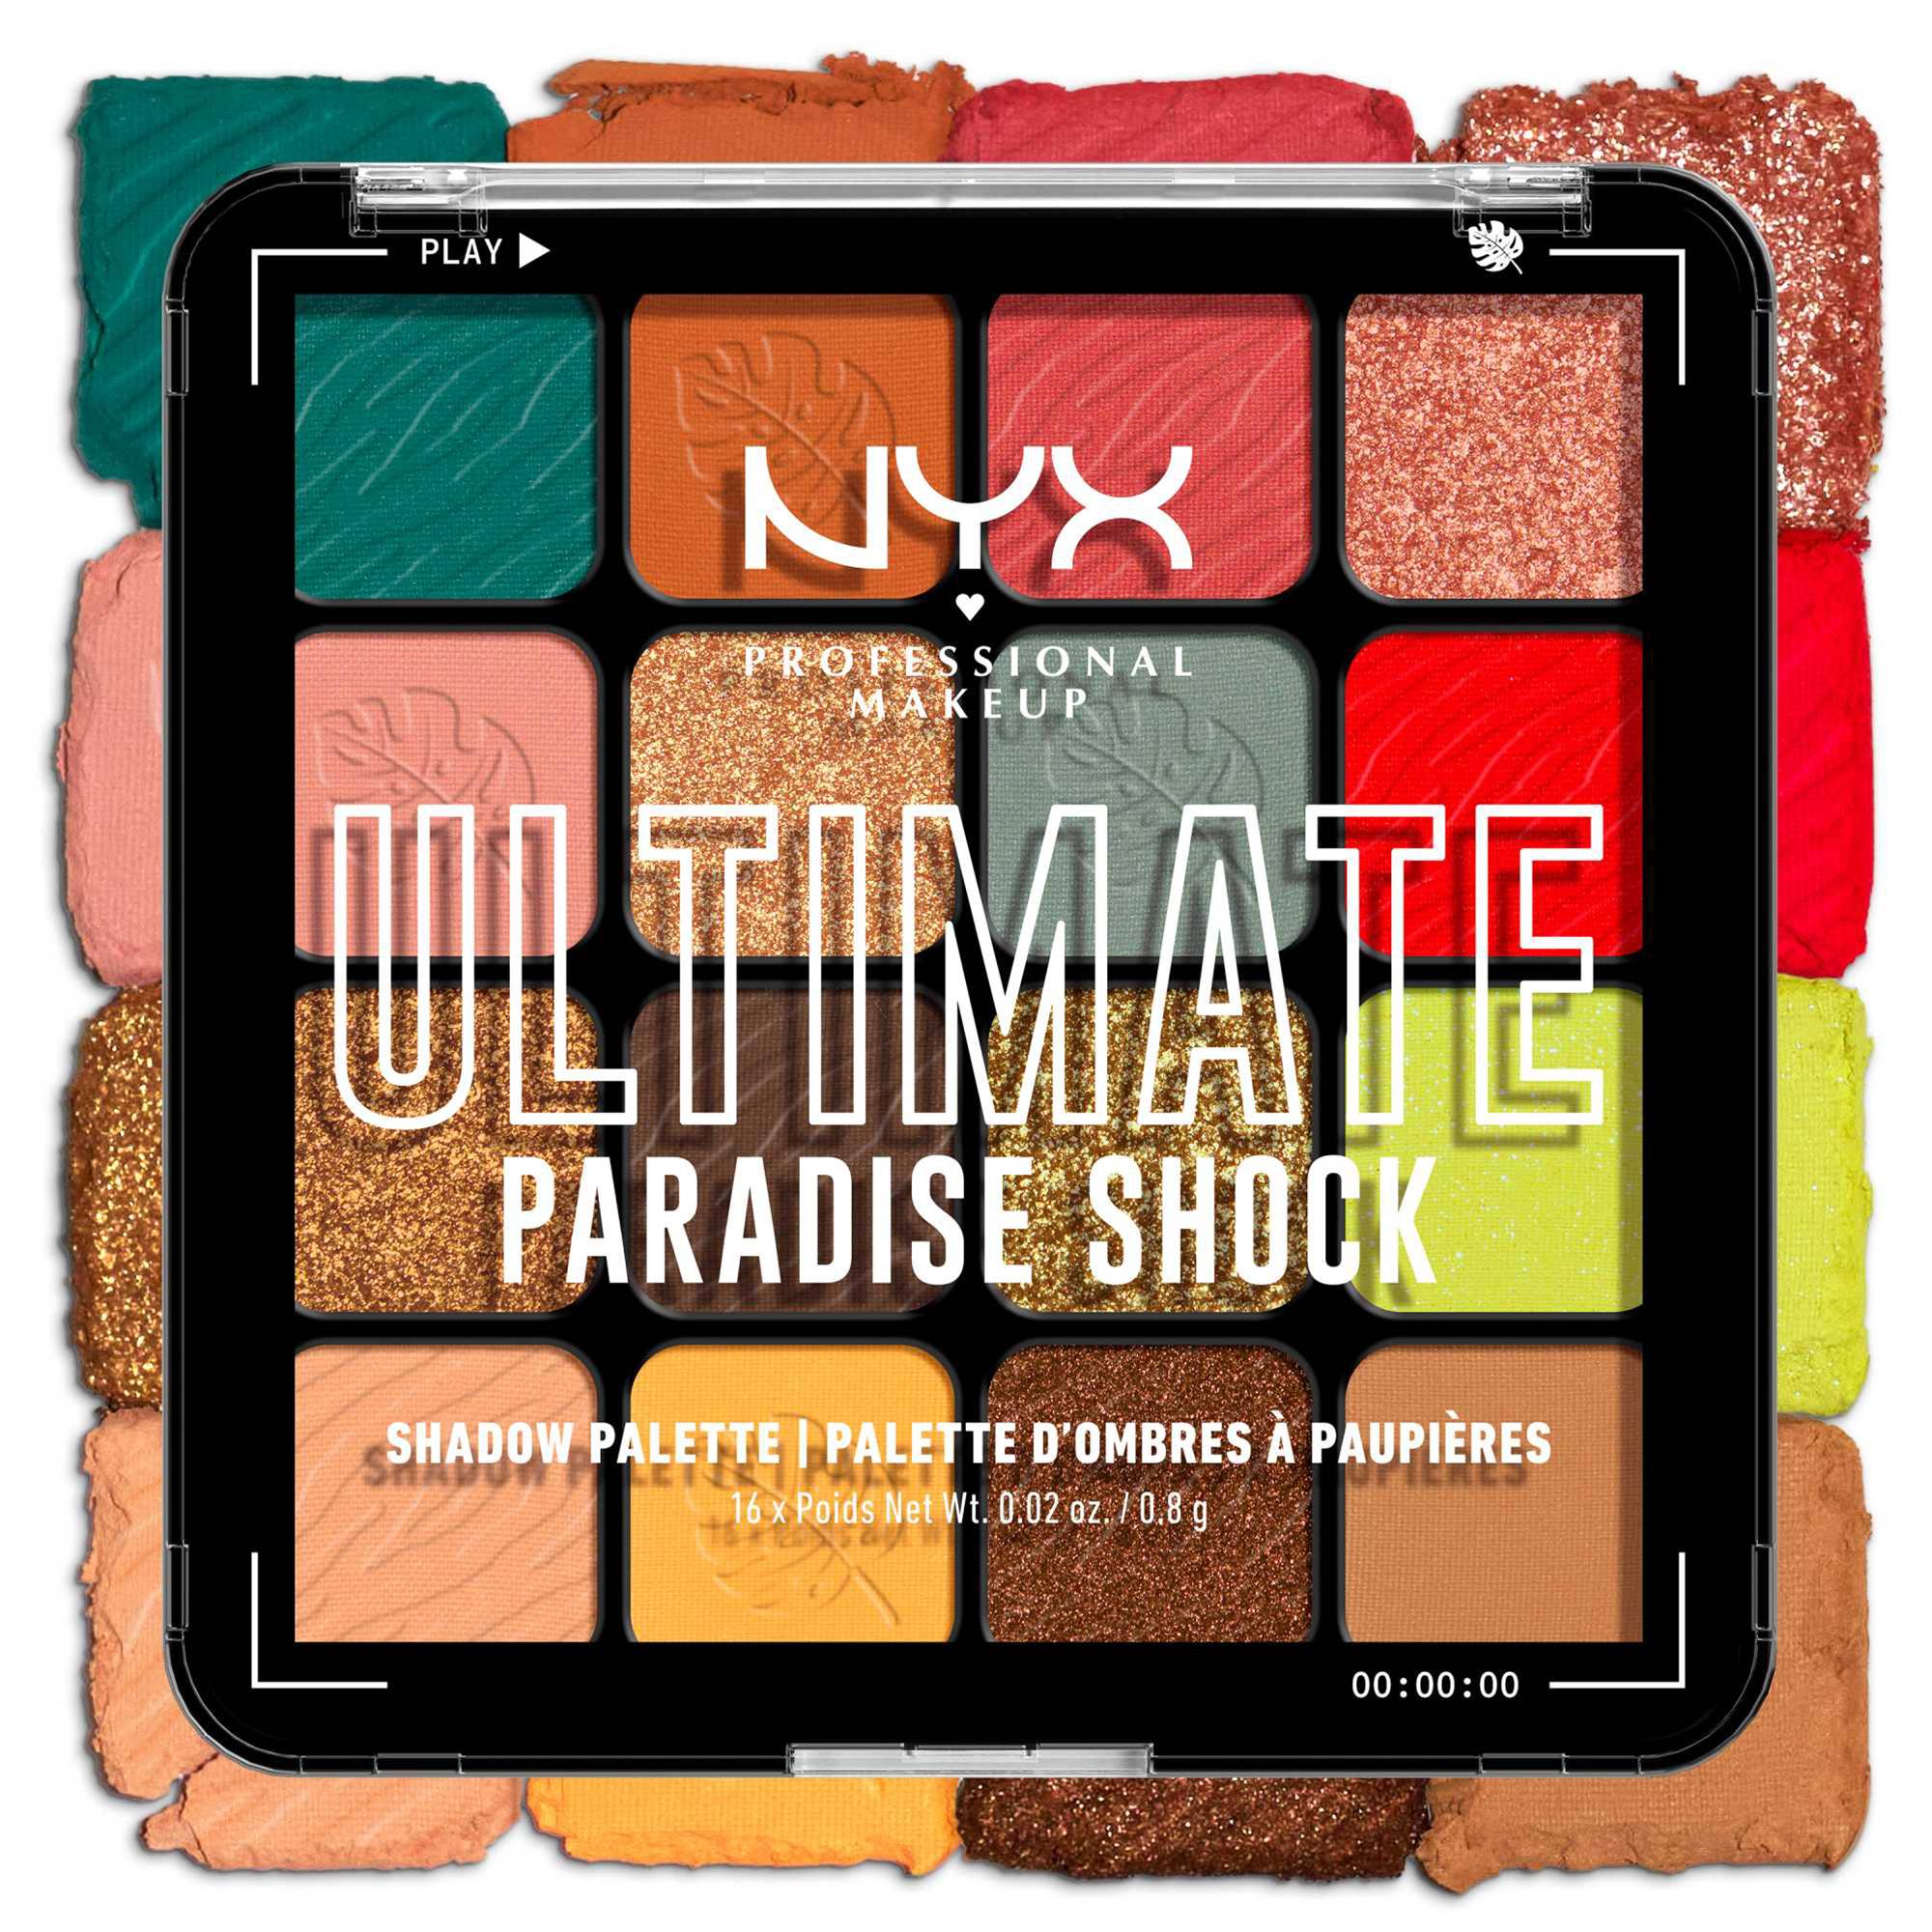 Palette 16 fards à paupières Ultimate Paradise Shock de la marque NYX Professional Makeup Contenance 108g - 6